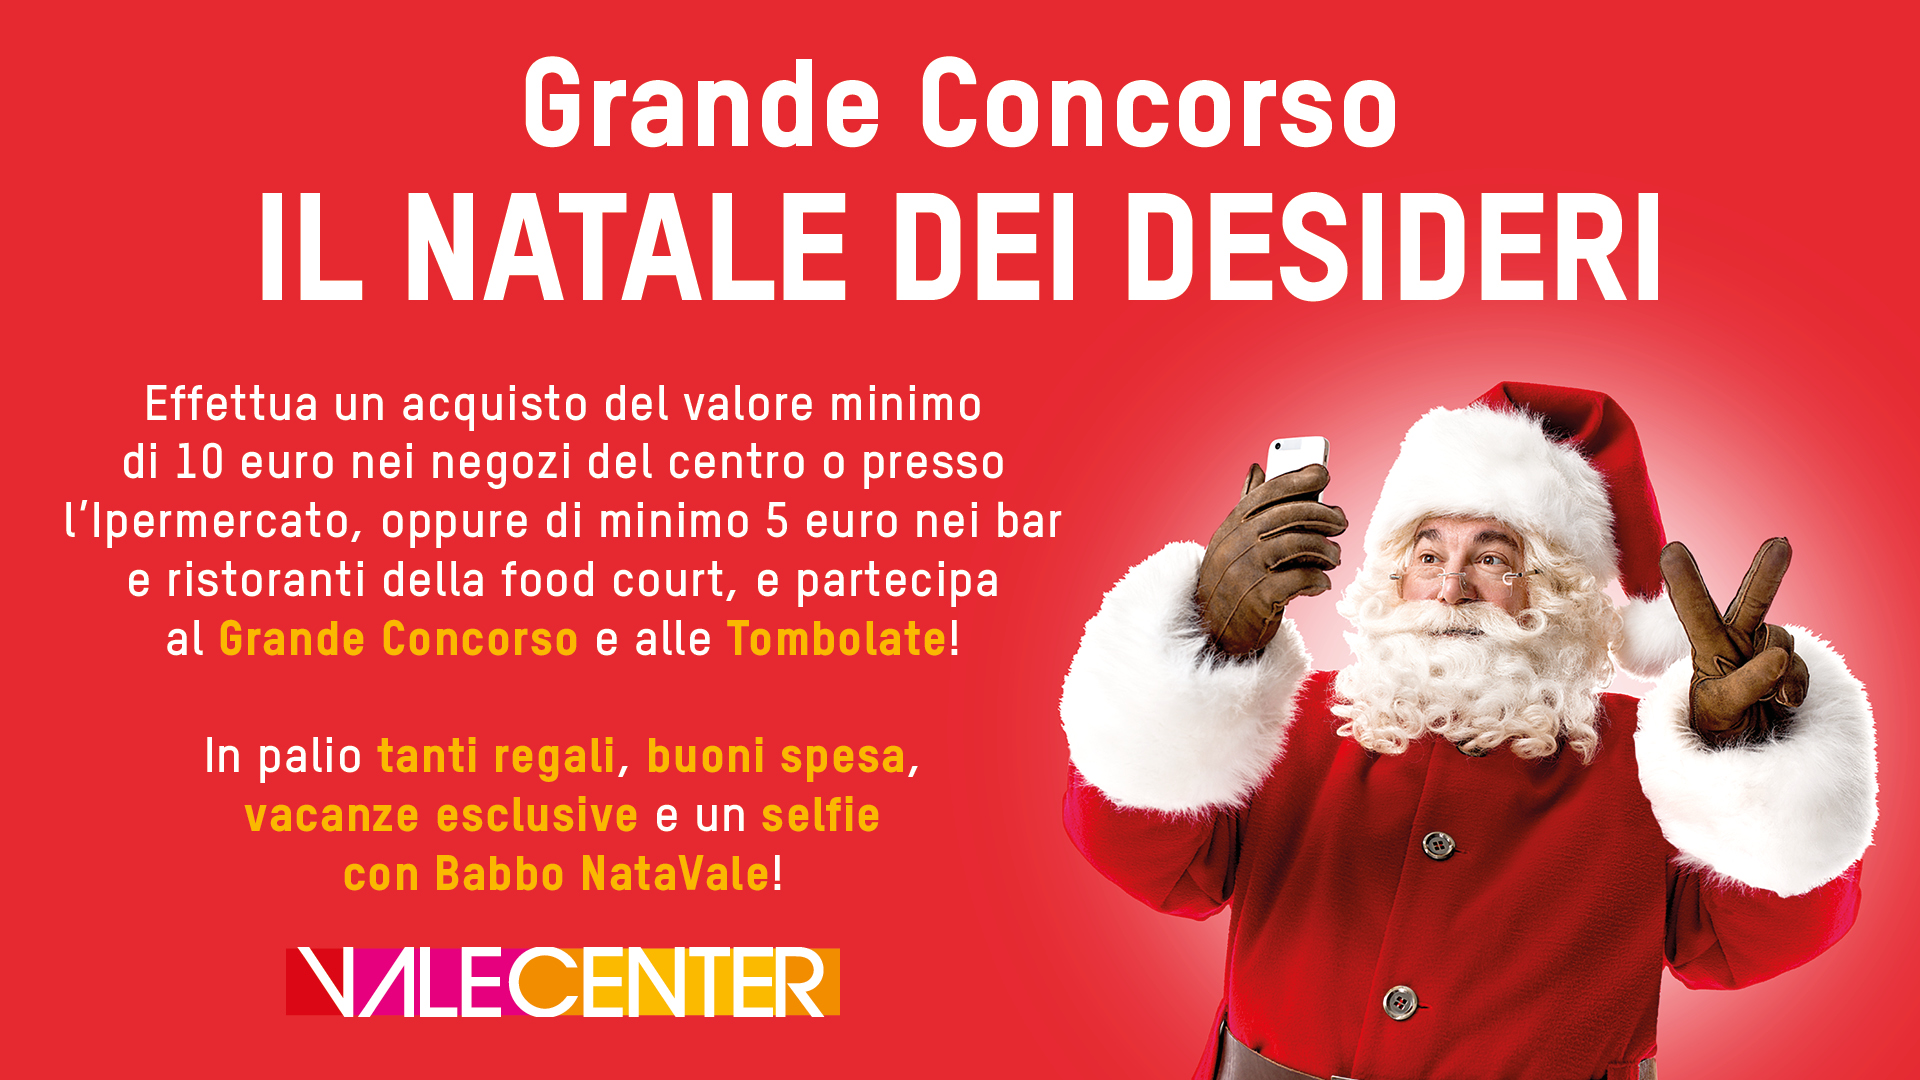 Regali Di Natale Da 5 A 10 Euro.Valecenter Centro Commerciale Grande Concorso Il Natale Dei Desideri